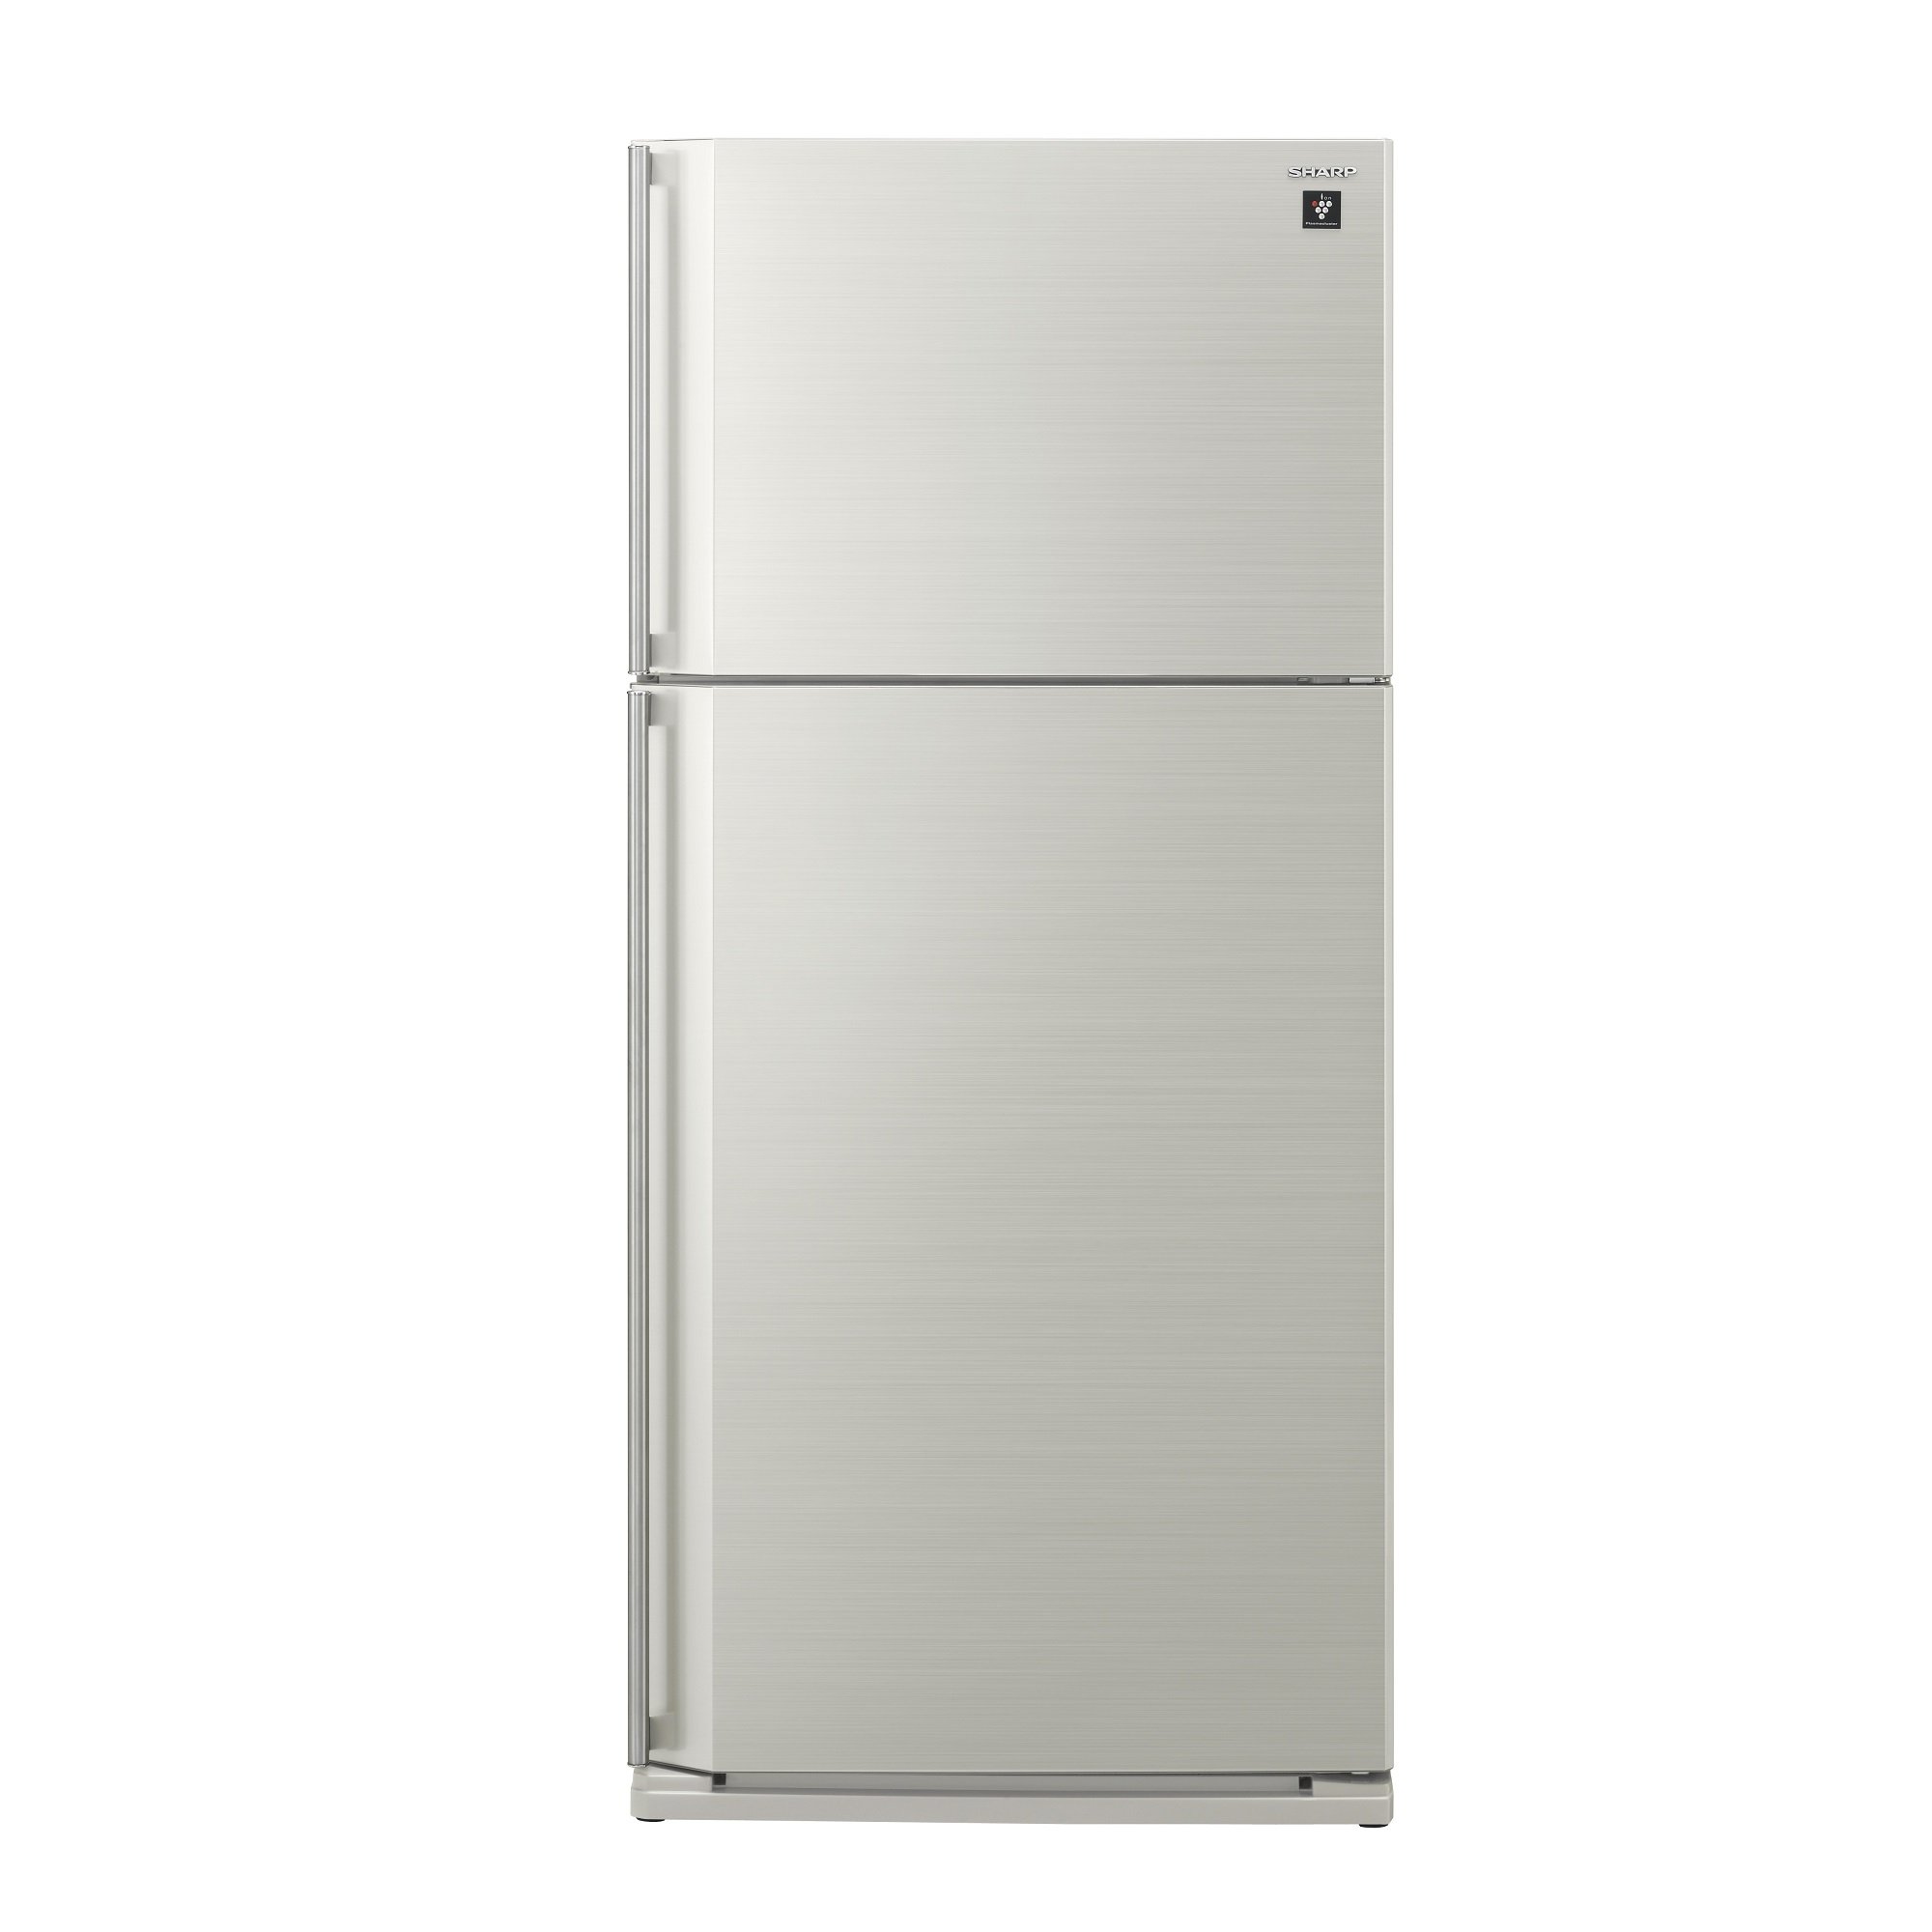 Холодильник Шарп SJ-sc59pv